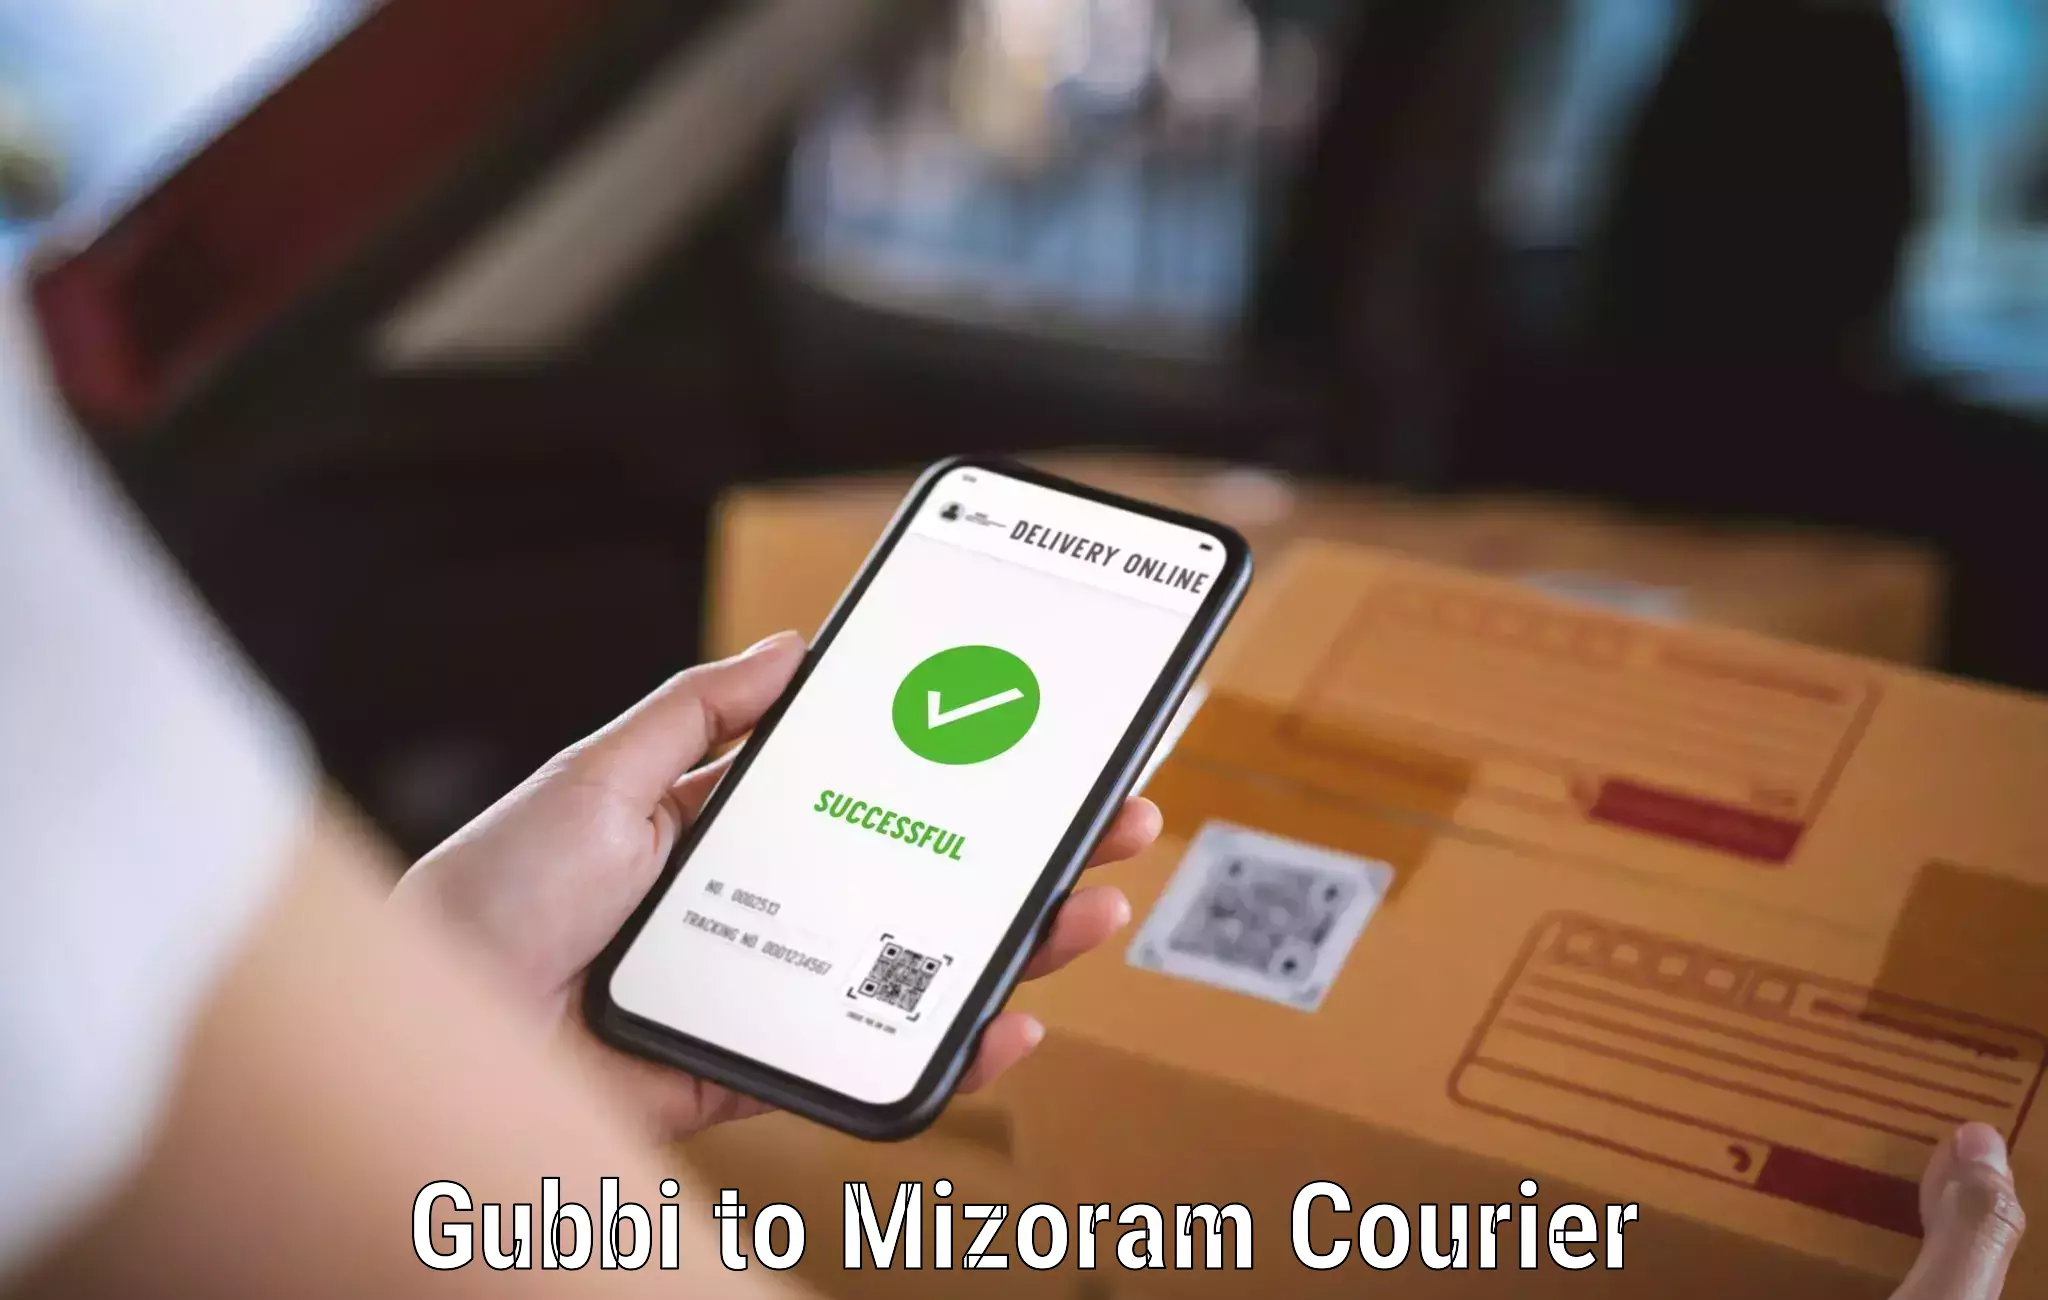 Professional parcel services Gubbi to Aizawl